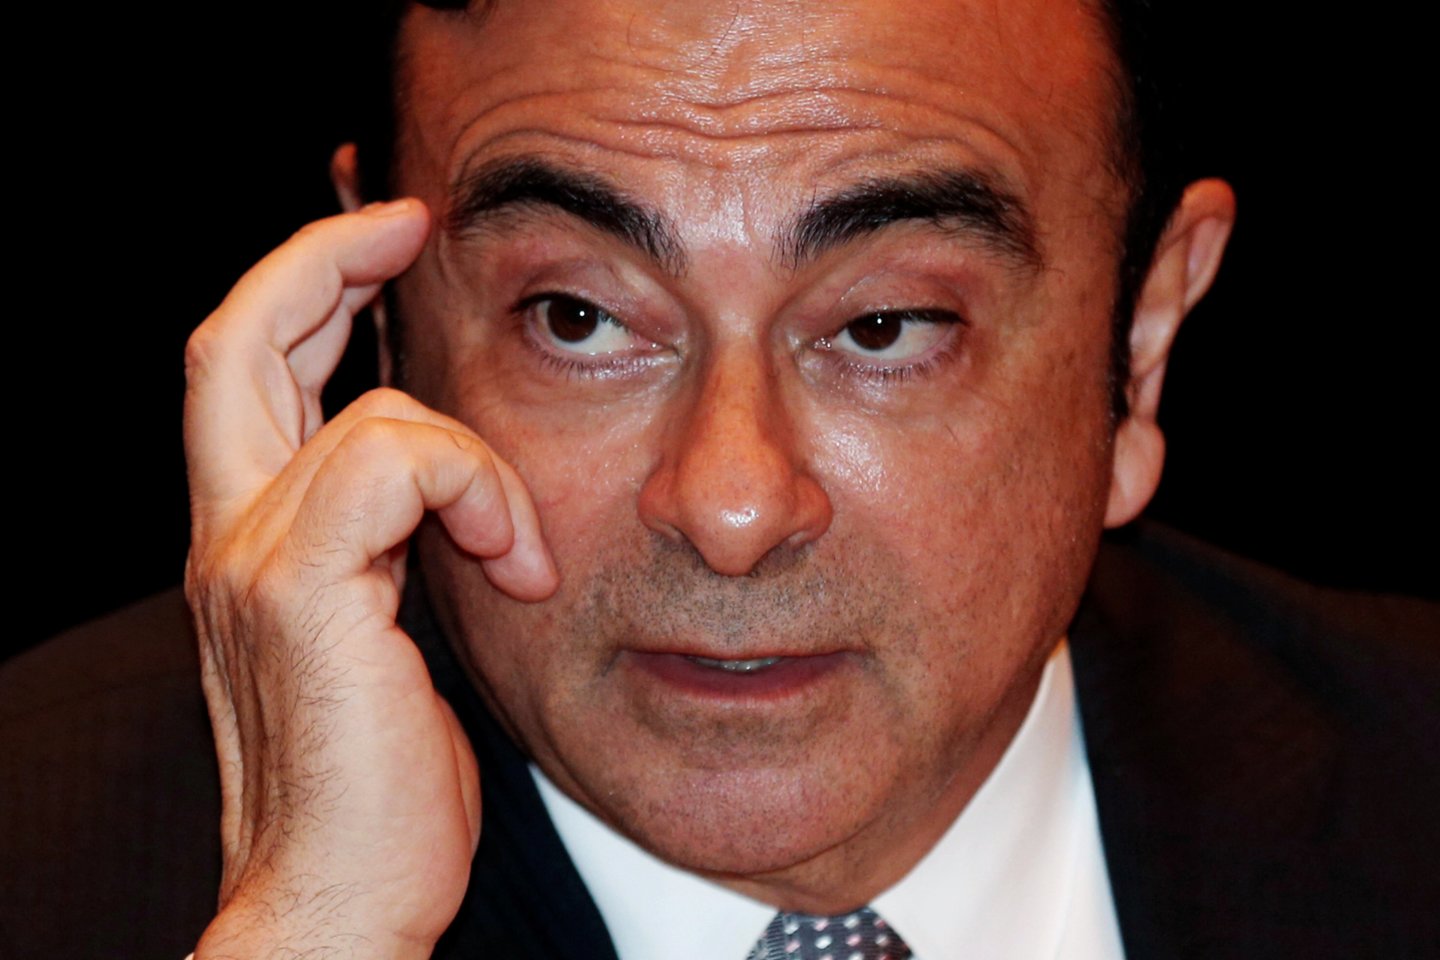 Buvęs automobilių gamybos bendrovės „Nissan Motor“ valdybos pirmininkas Carlosas Ghosnas trečiadienį sumokėjo 1 mlrd. jenų (7,9 mln. eurų) užstatą ir išvyko iš Tokijo tardymo izoliatoriaus, kur praleido daugiau kaip 100 dienų.<br>Reuters/Scanpix nuotr.